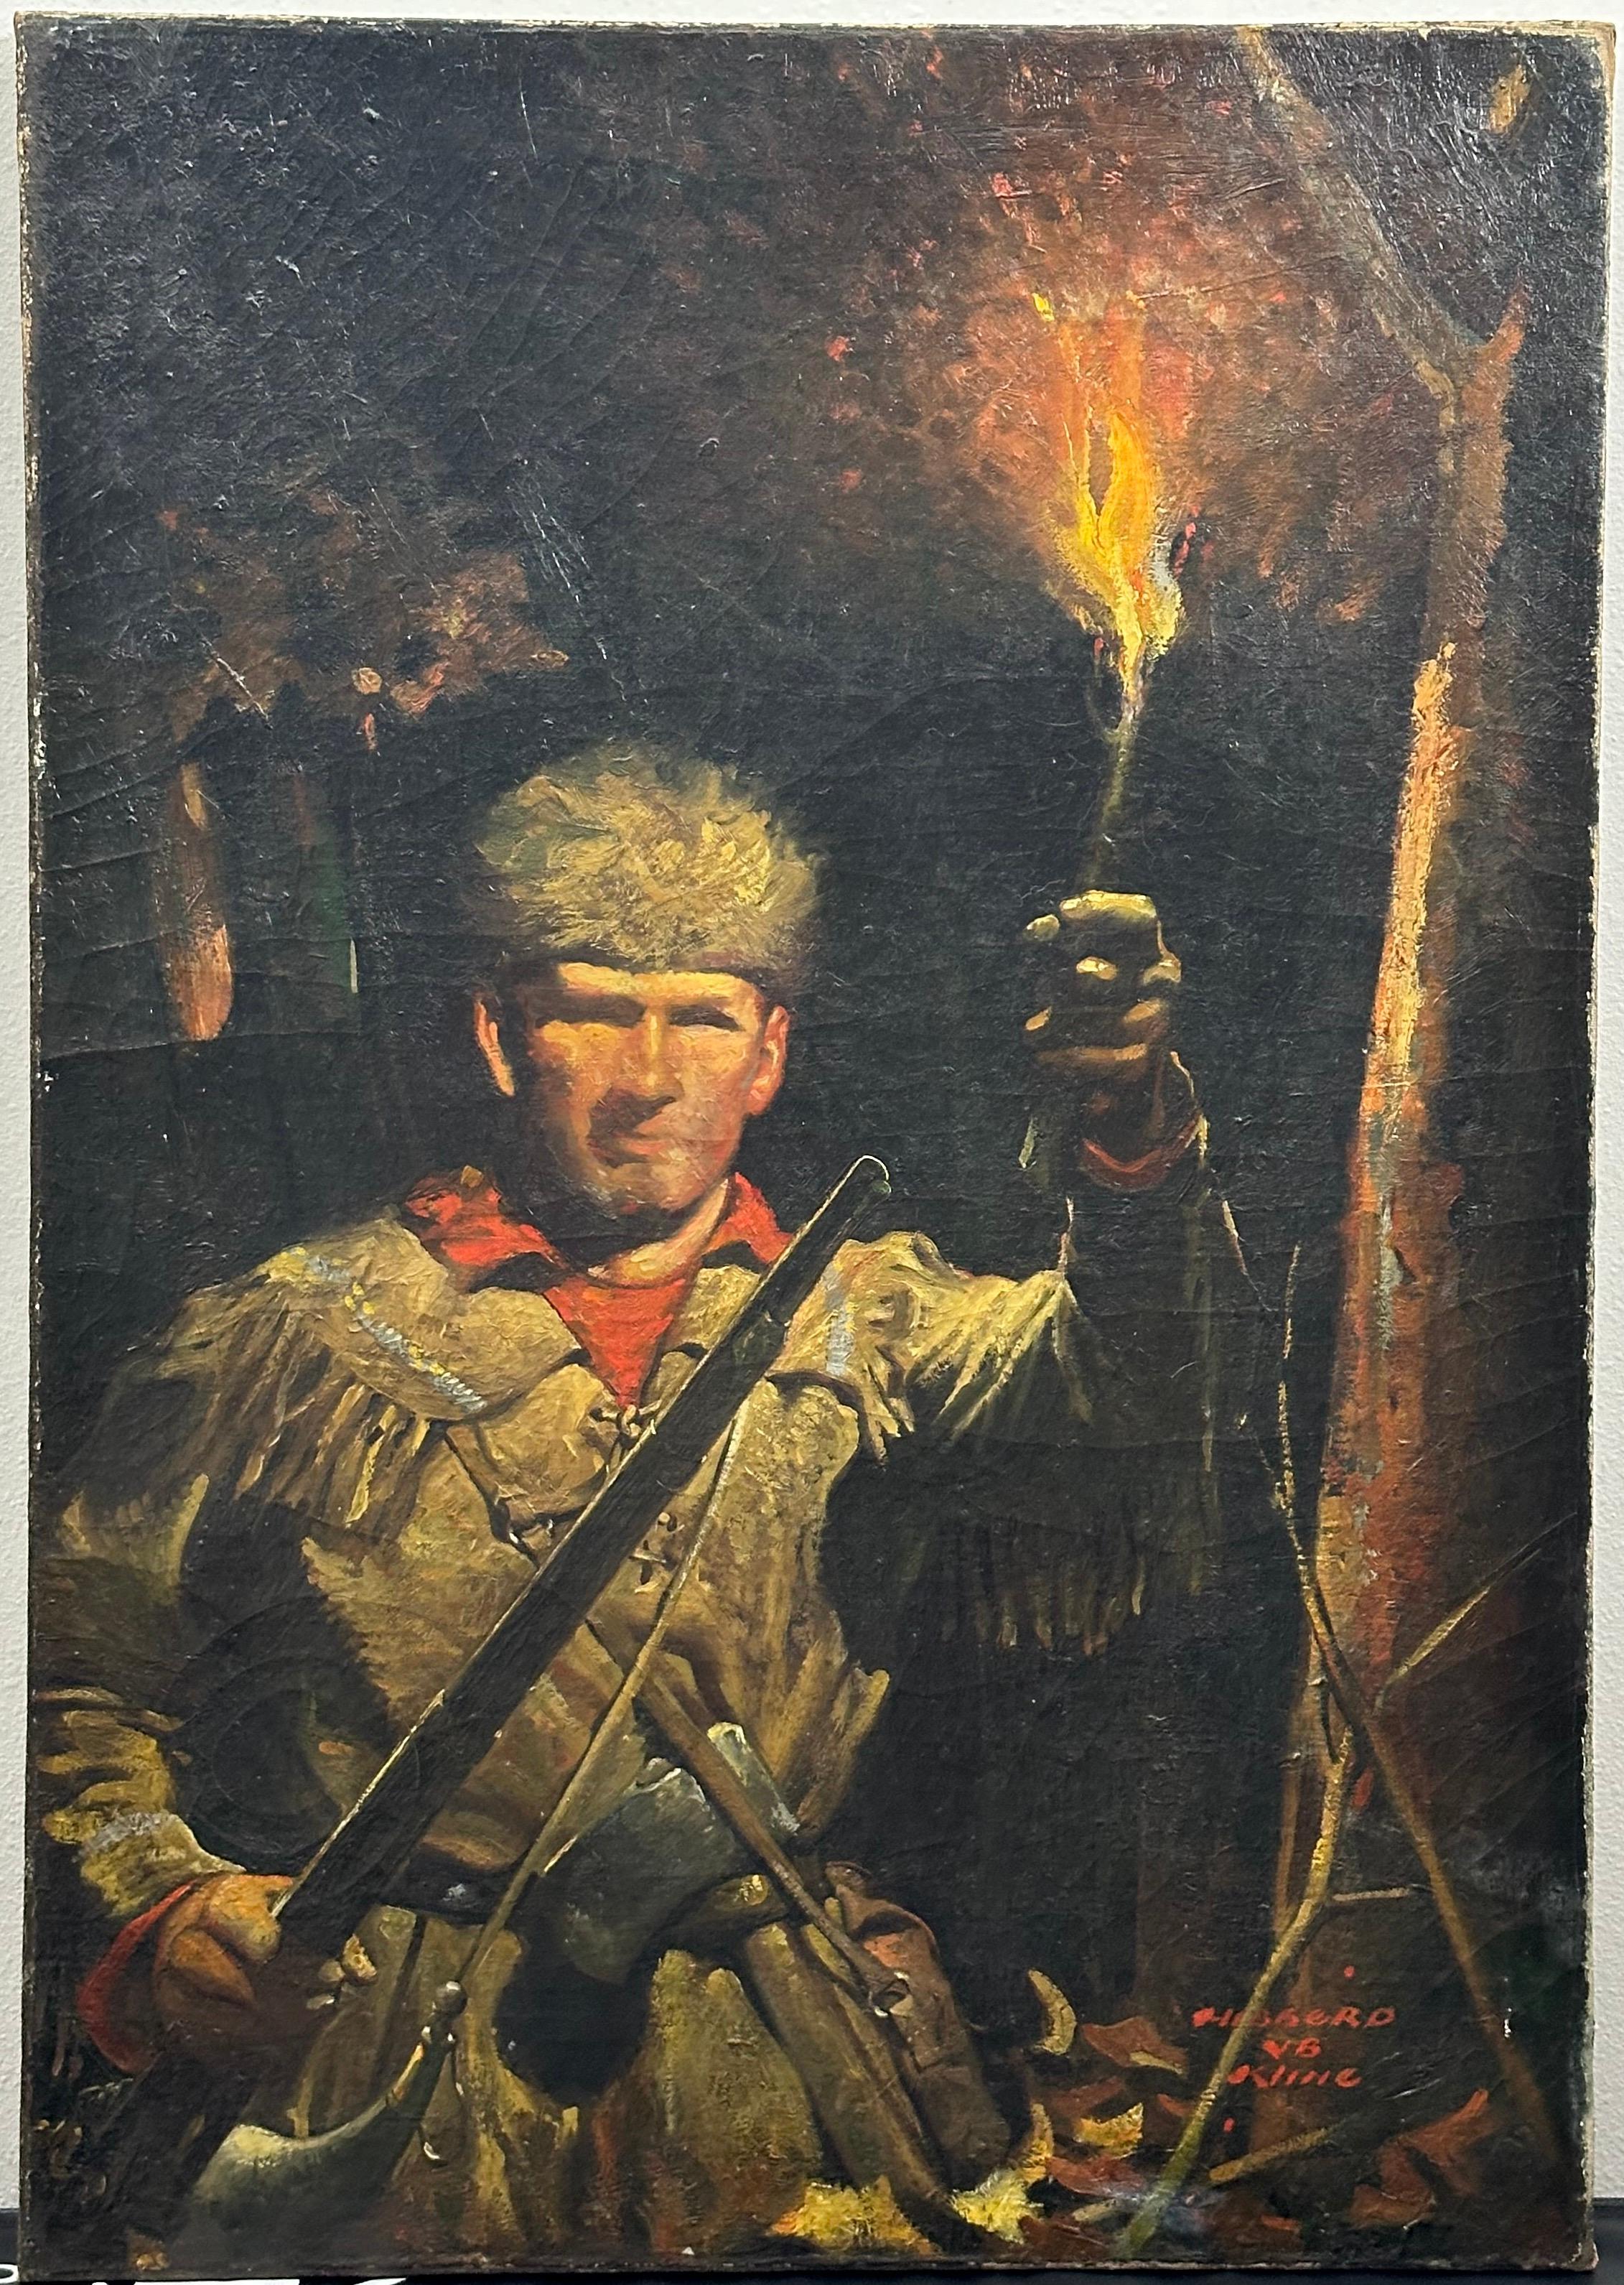 Hibberd Van Buren Kline Figurative Painting - Frontiersman Davy Crockett Golden Age Illustration painting